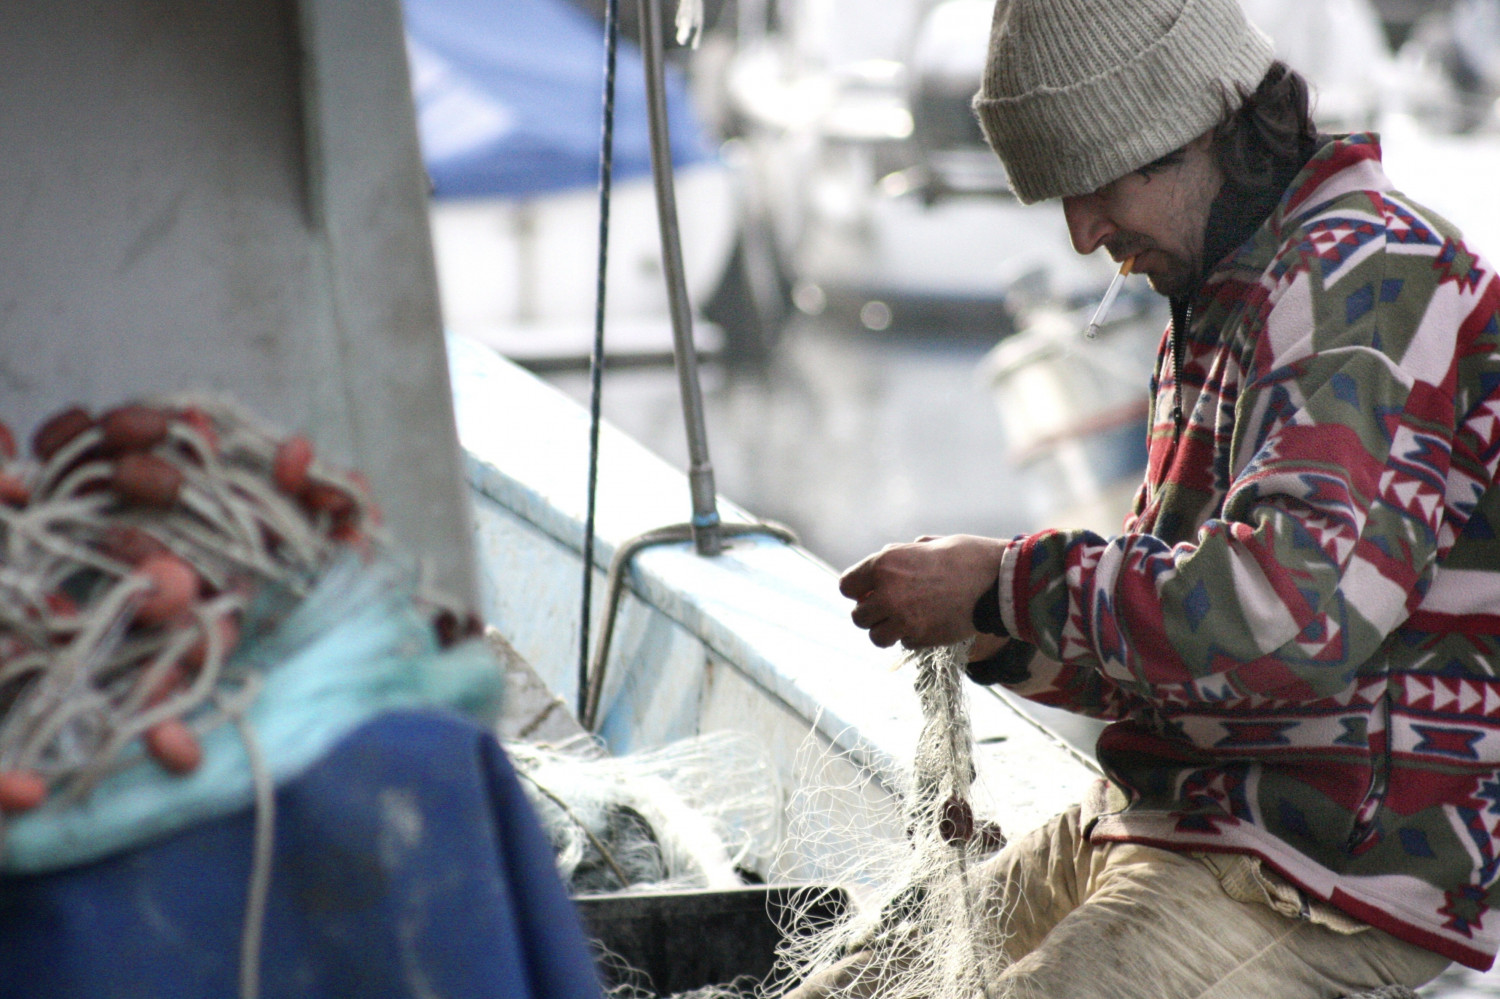 Fiskefartøjs reder var ansvarlig, fordi vagthavende faldt i søvn